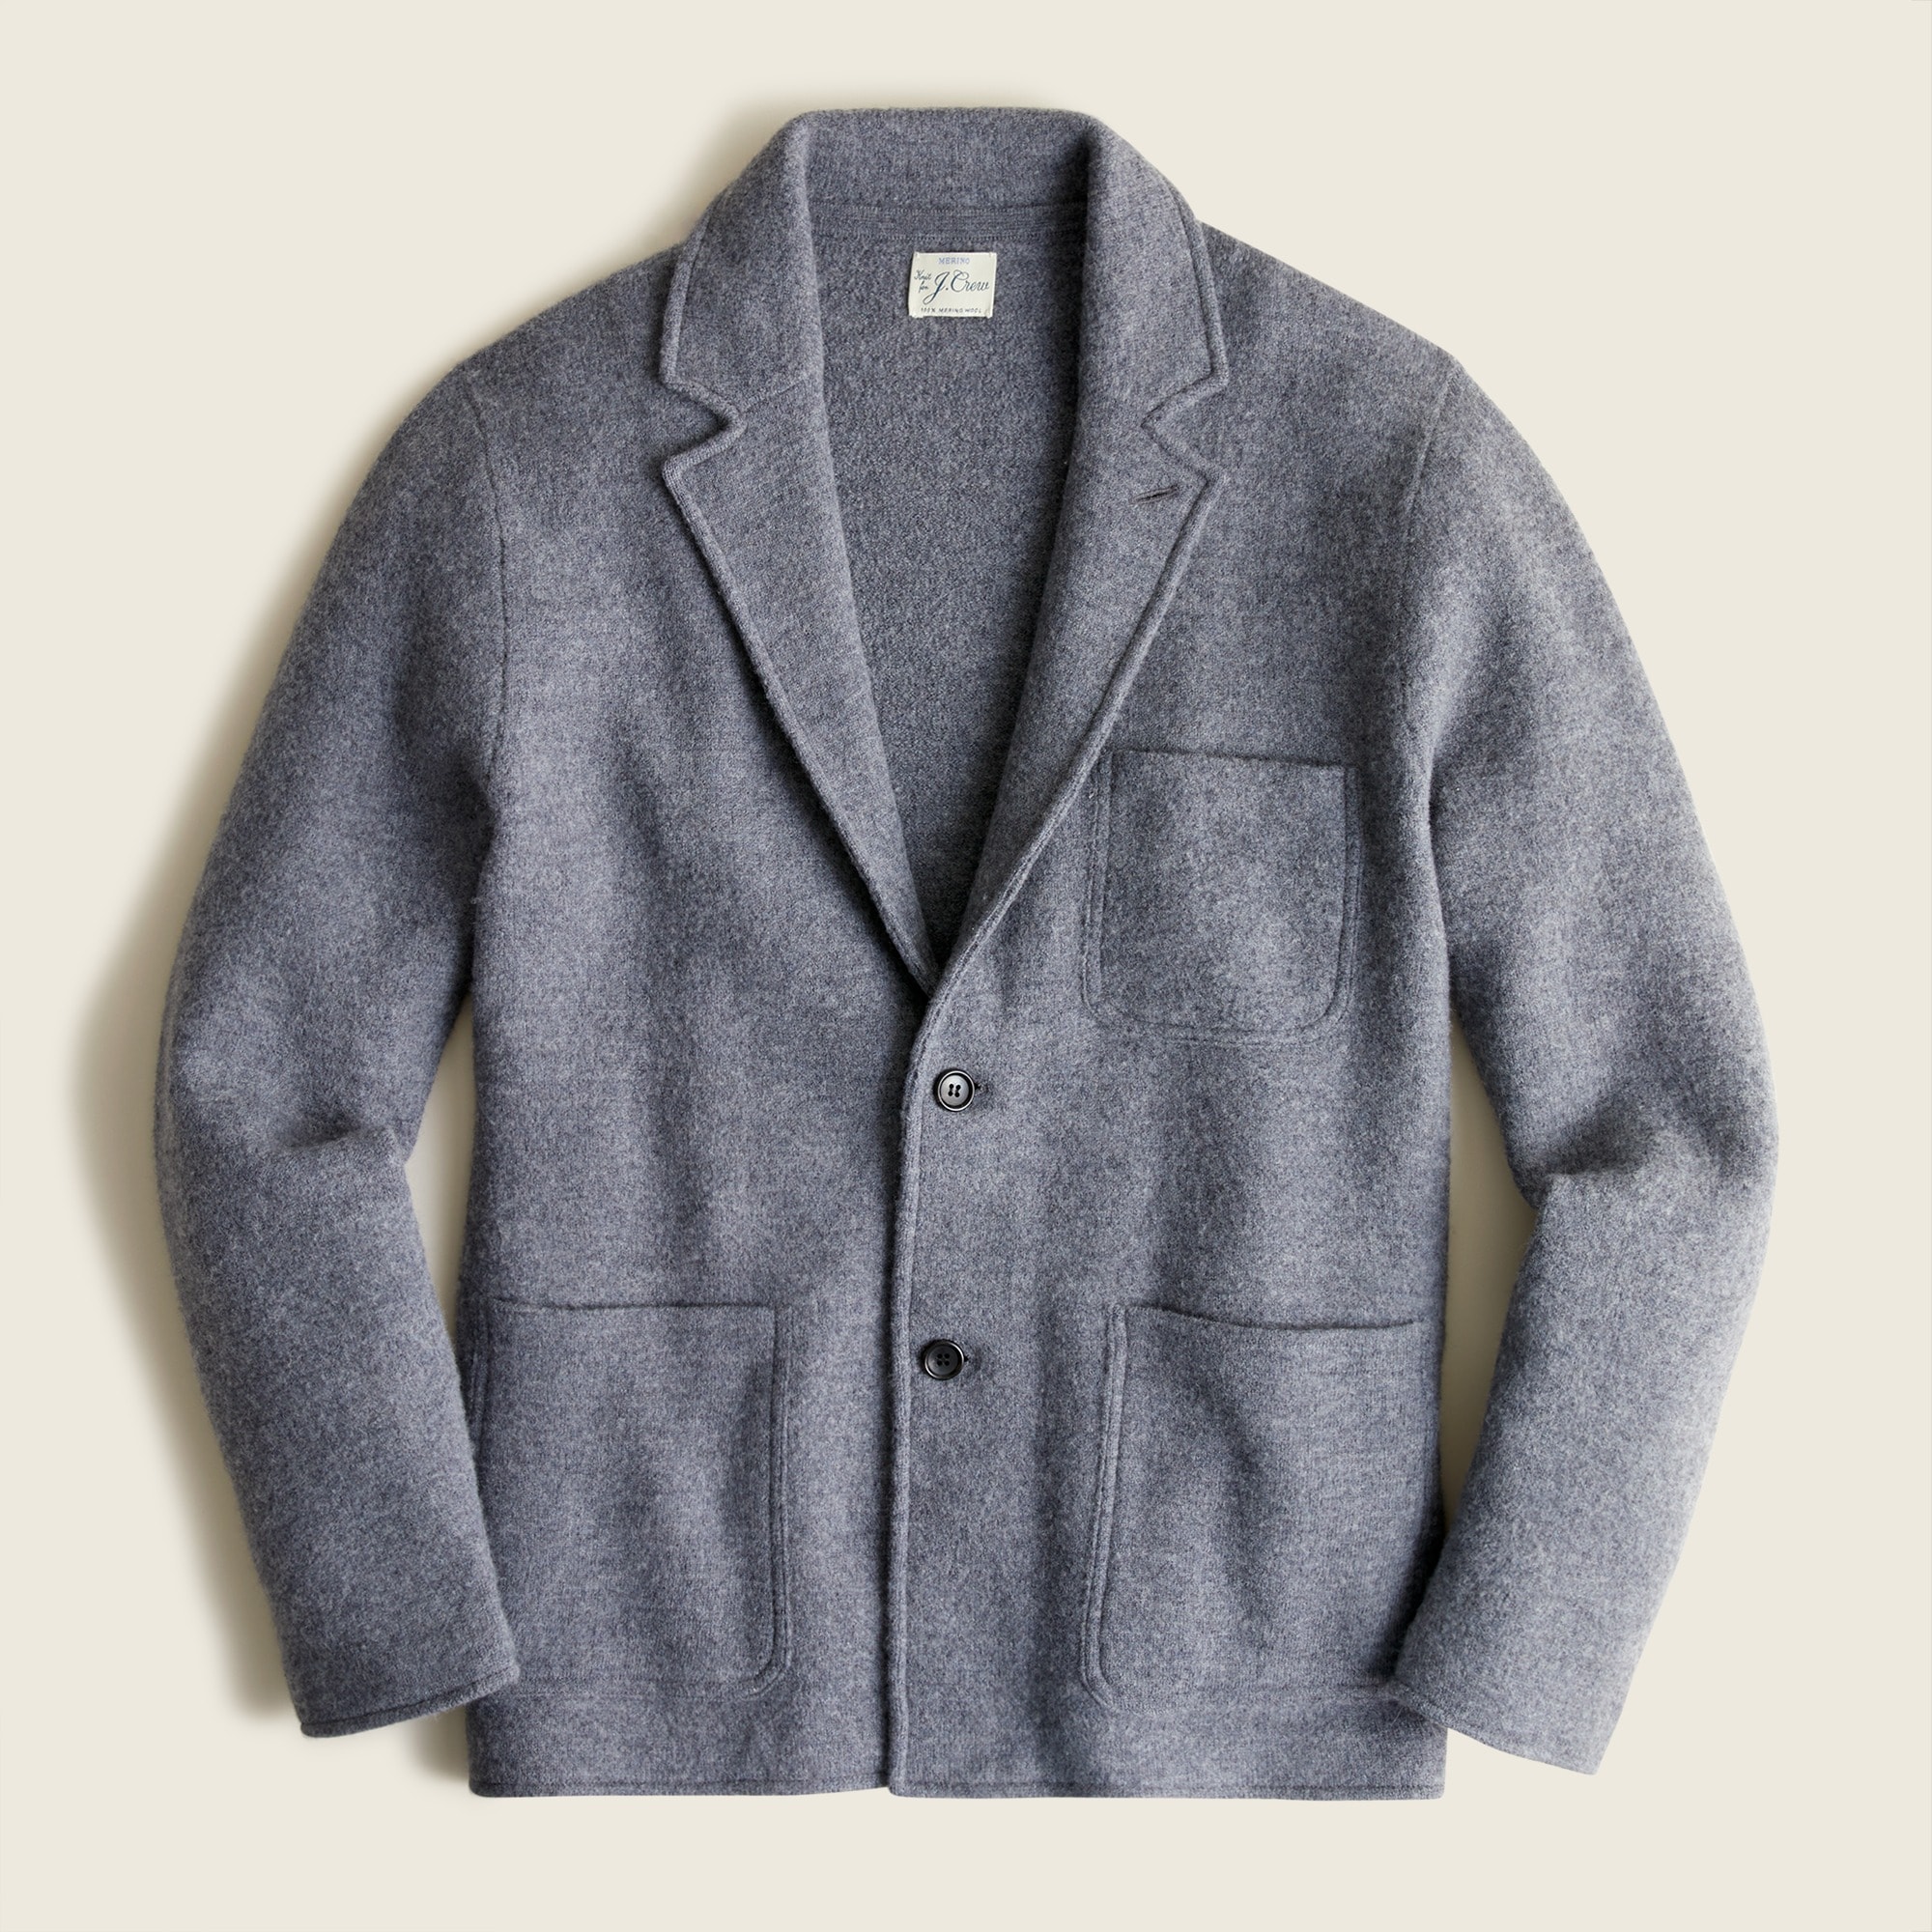 J.Crew: Boiled Merino Wool Sweater-blazer For Men